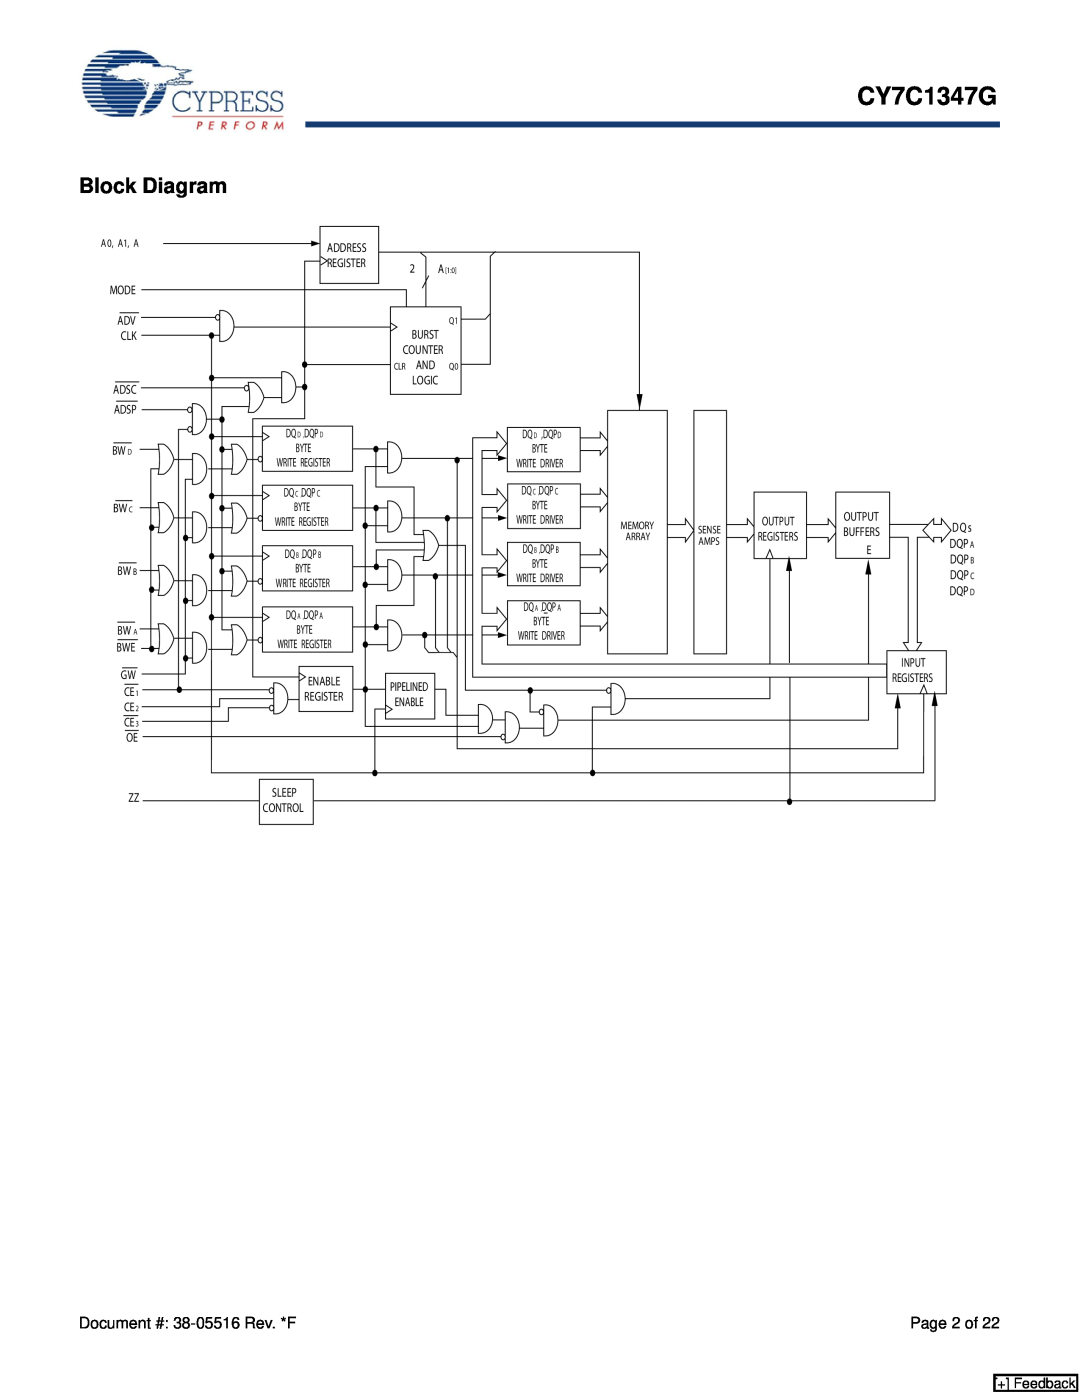 Cypress CY7C1347G manual Block Diagram, + Feedback, Address, Register, Adsc, Dq D ,Dqp D 